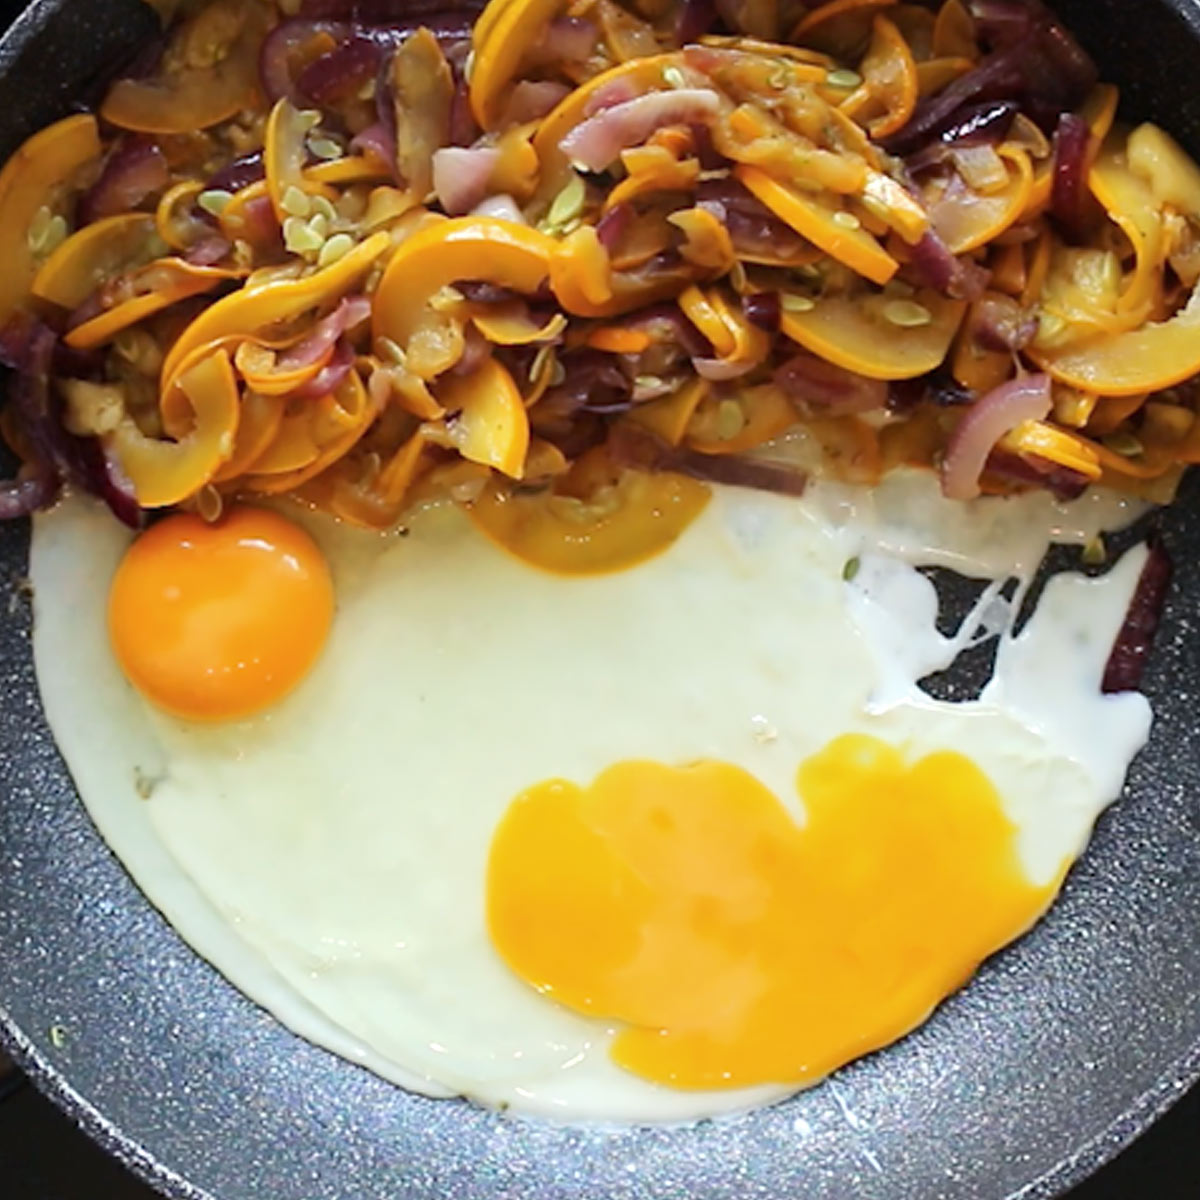 break eggs into skillet with zucchini